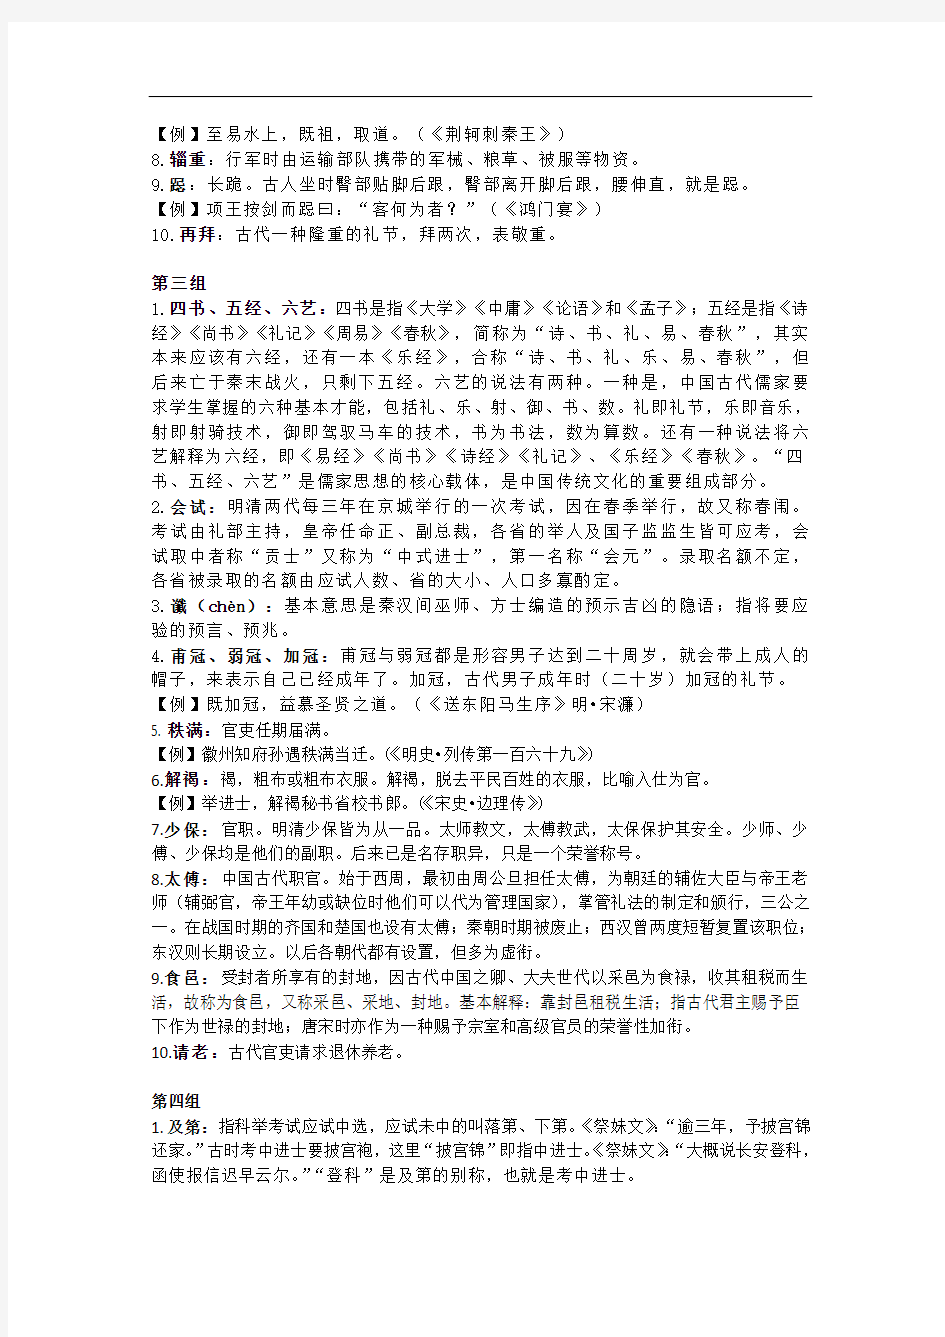 高中中国古代文化常识集锦(14组,140例)